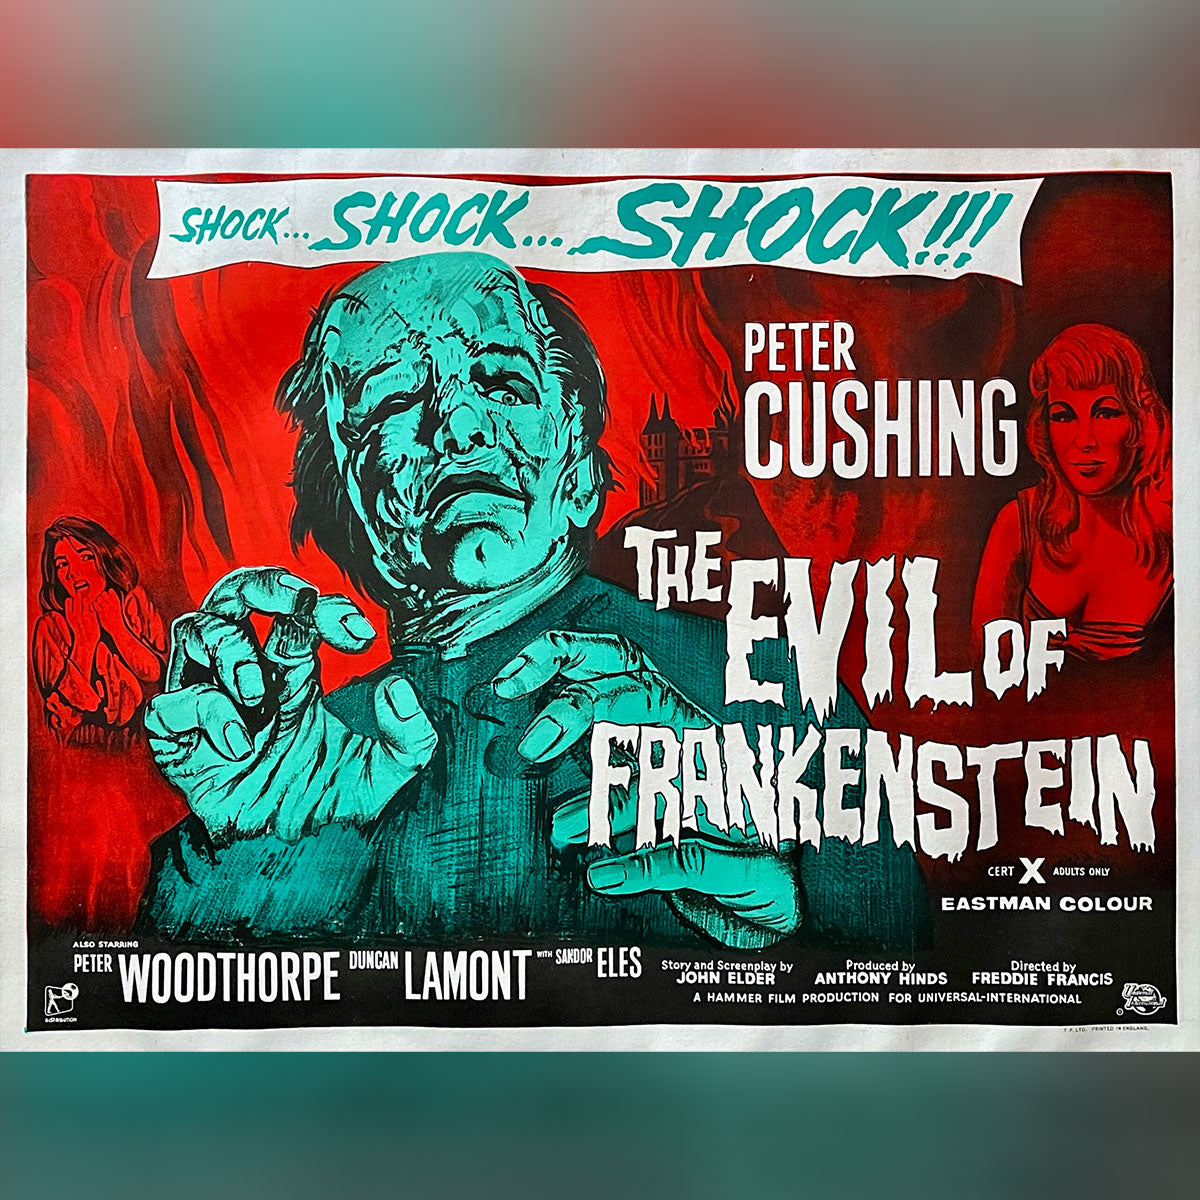 Evil of Frankenstein, The (1964)